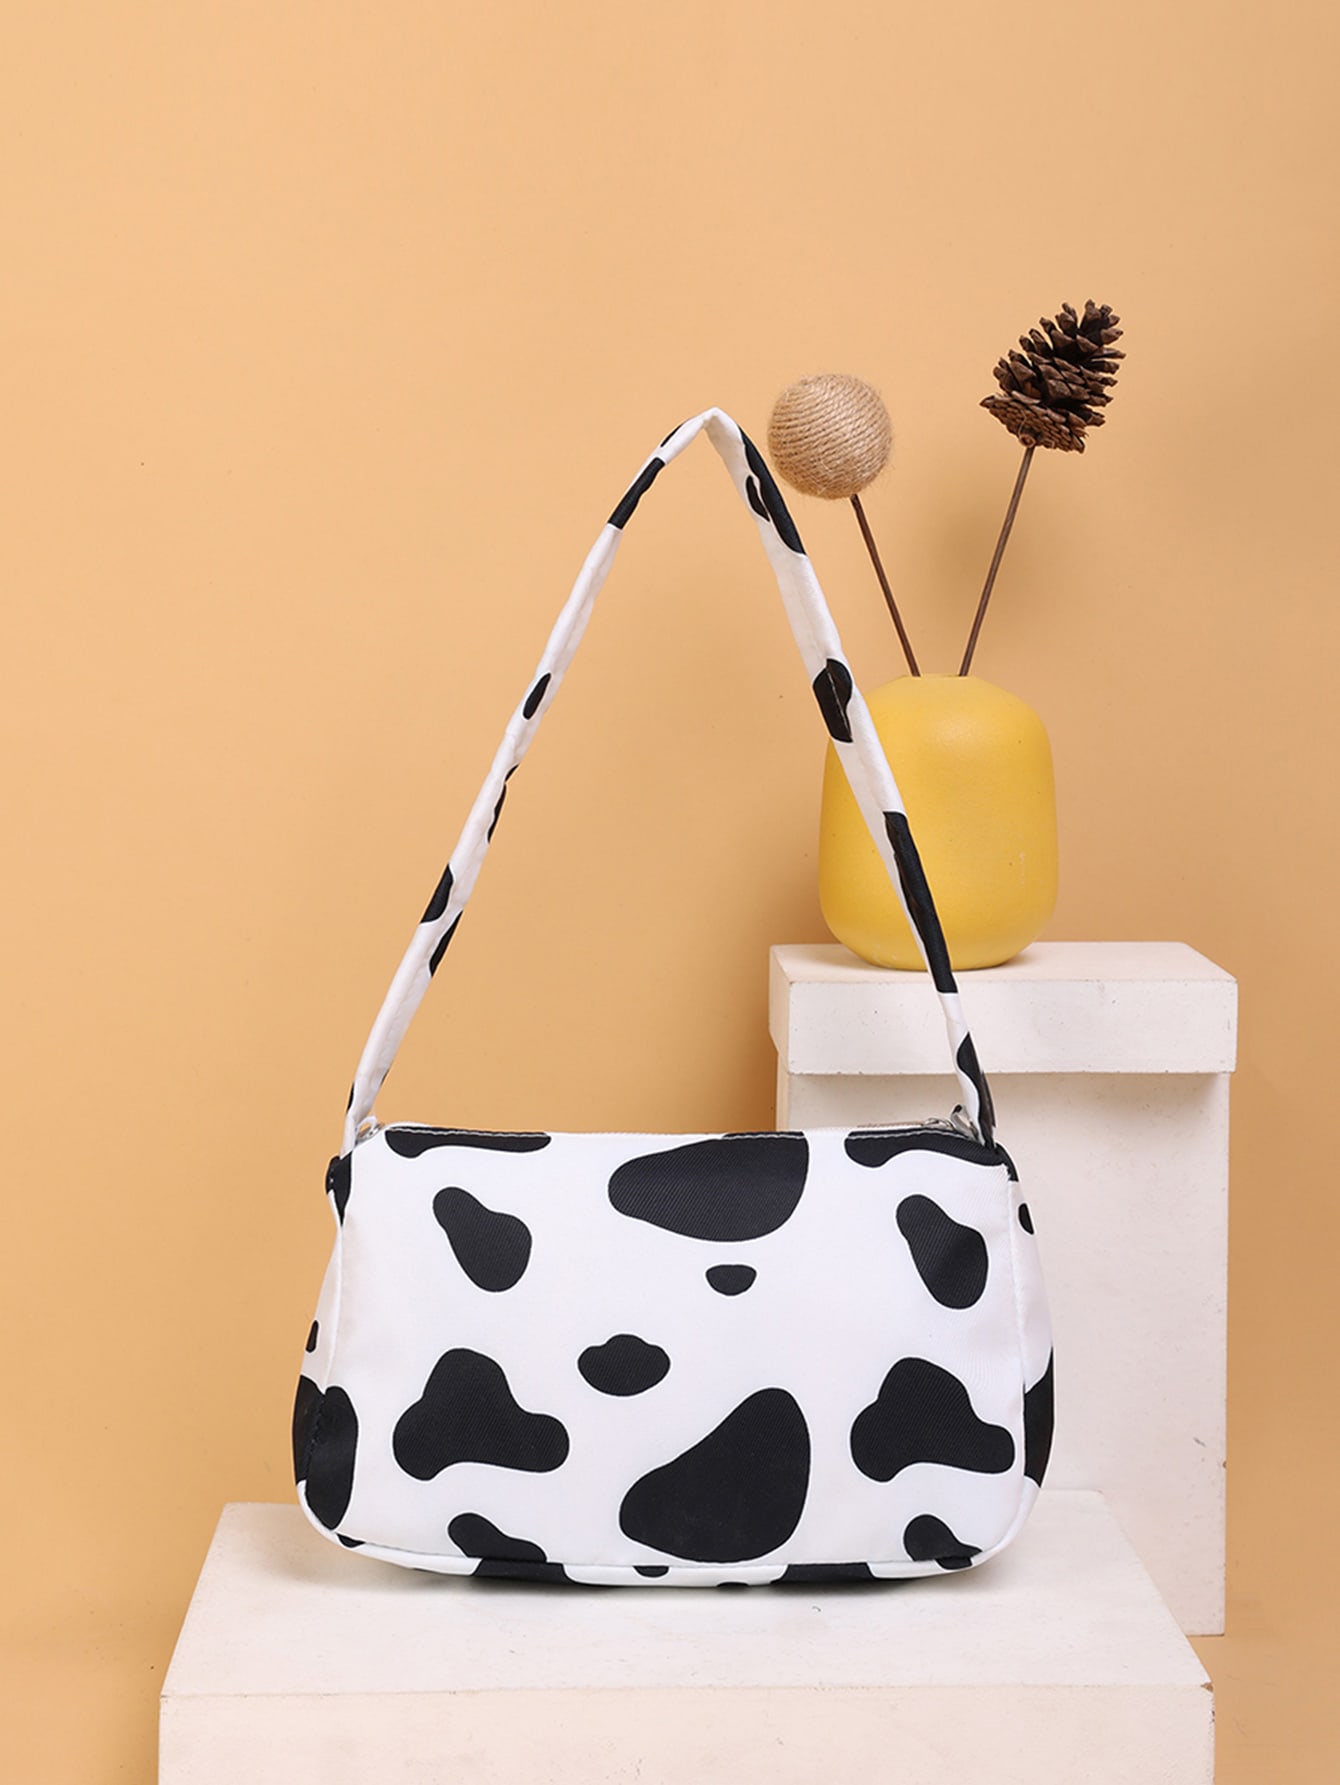 Багетная сумка с коровьим принтом, черное и белое